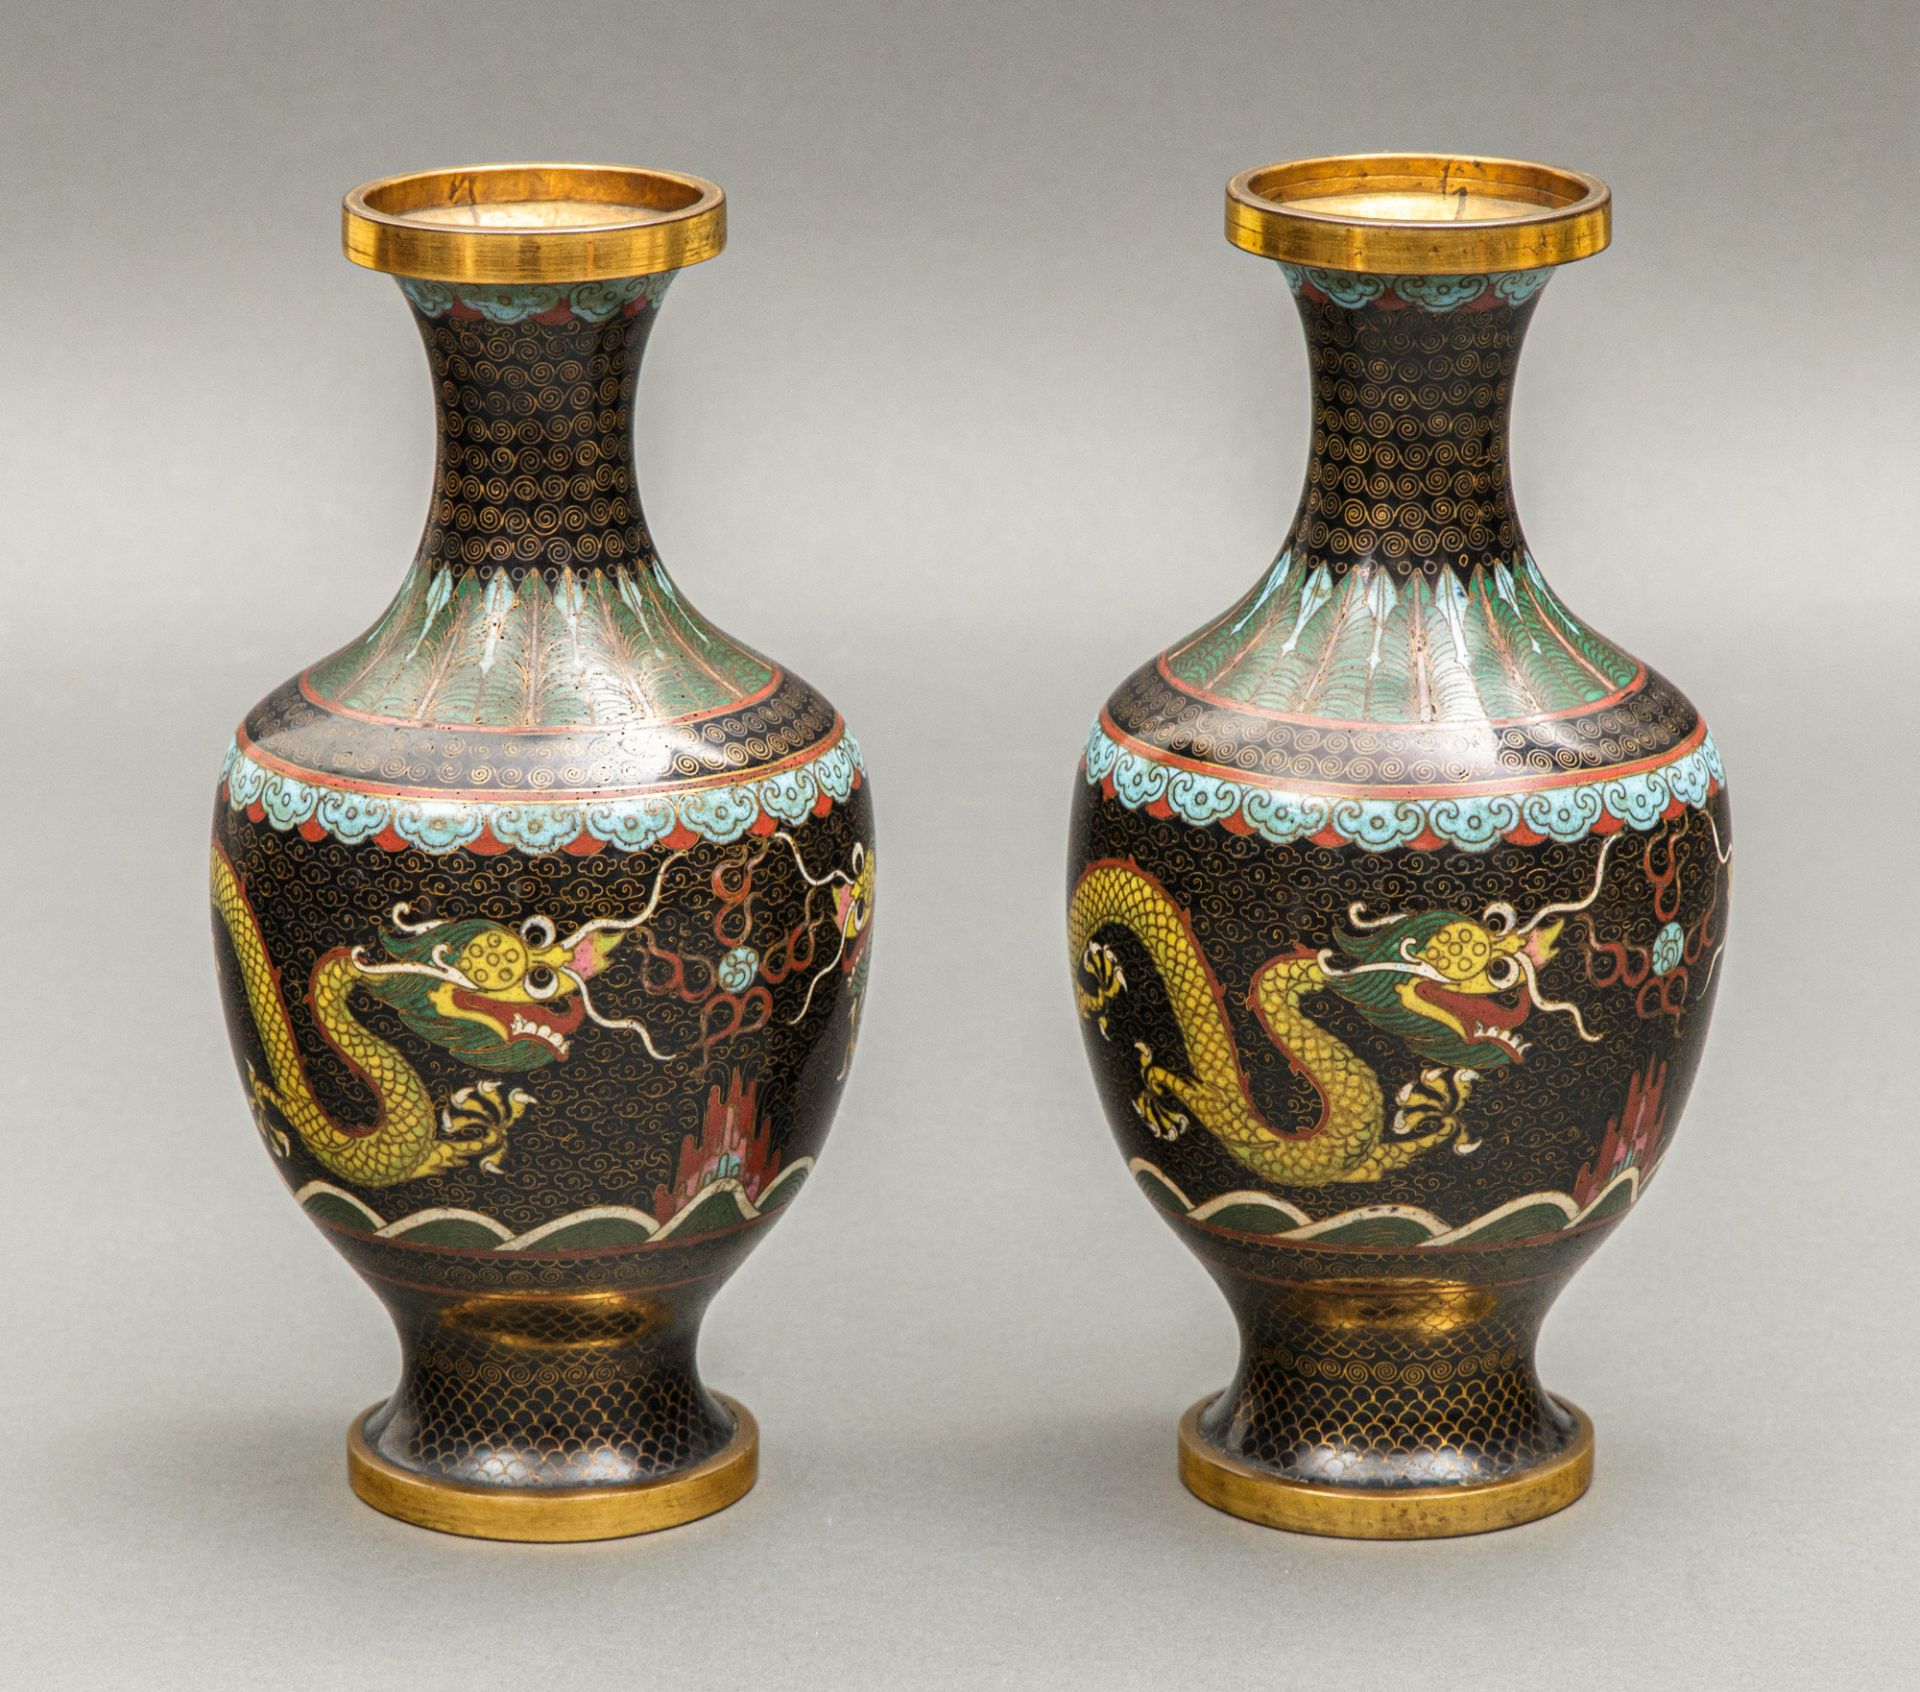 Paar Cloisonné Vasen, China, wohl Qing-Dynastie, Guangxu Zeit (1871-1908)